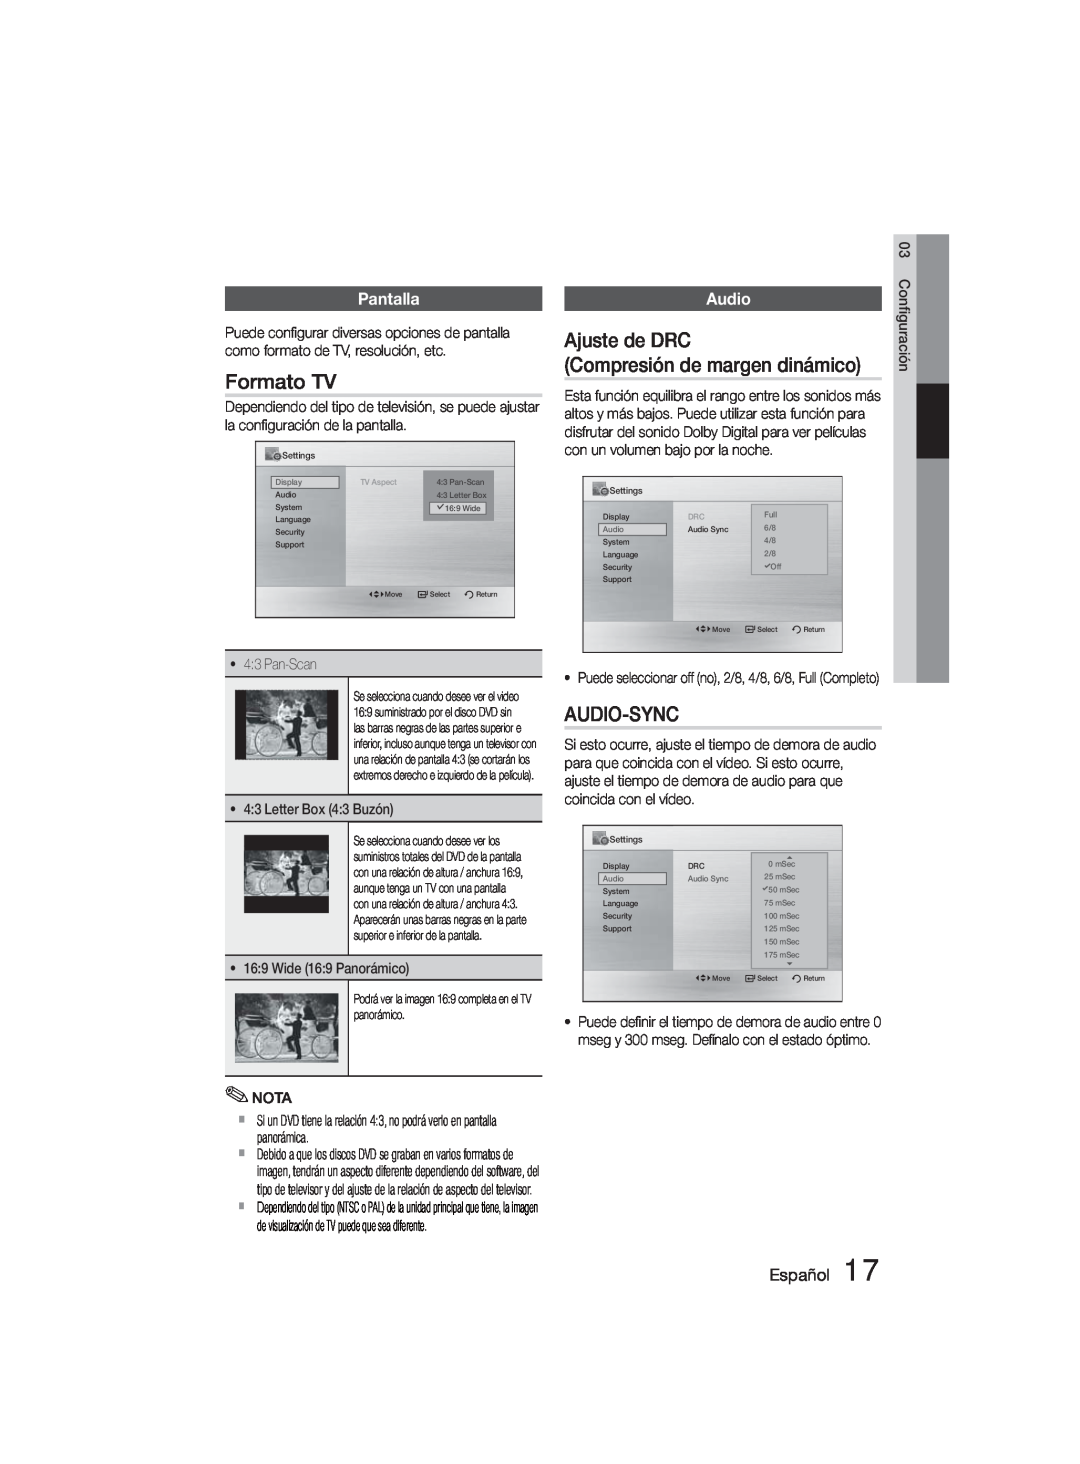 Samsung MM-D330D/ZF manual Formato TV, Ajuste de DRC Compresión de margen dinámico, Audio-Sync, Pantalla, Español 